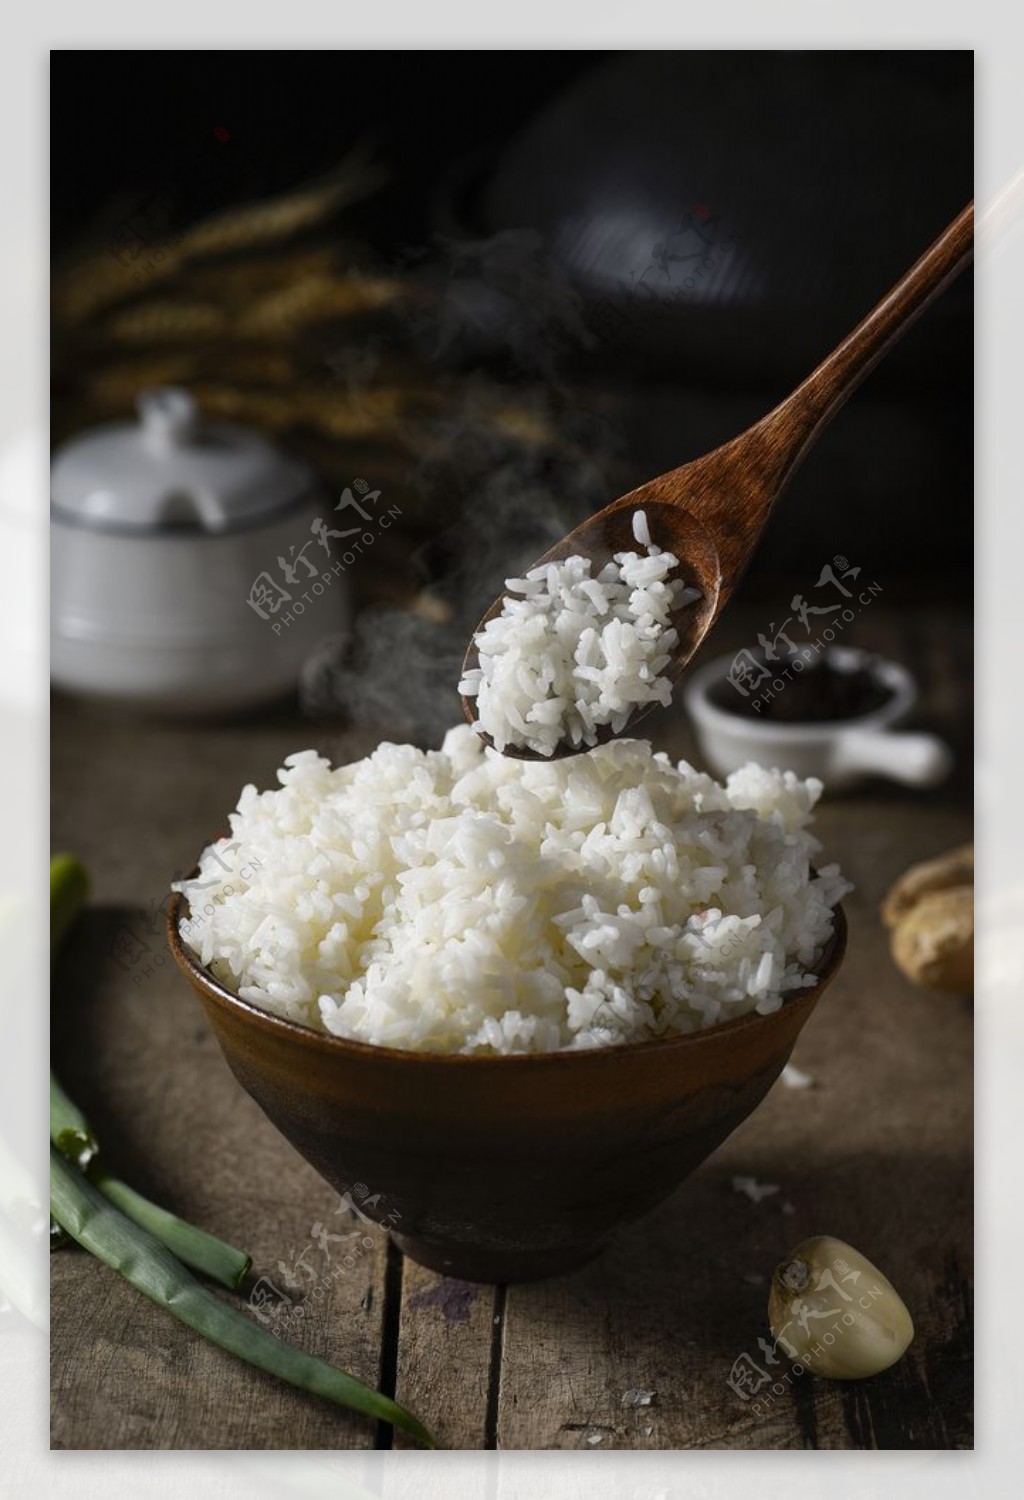 香喷喷的白米饭